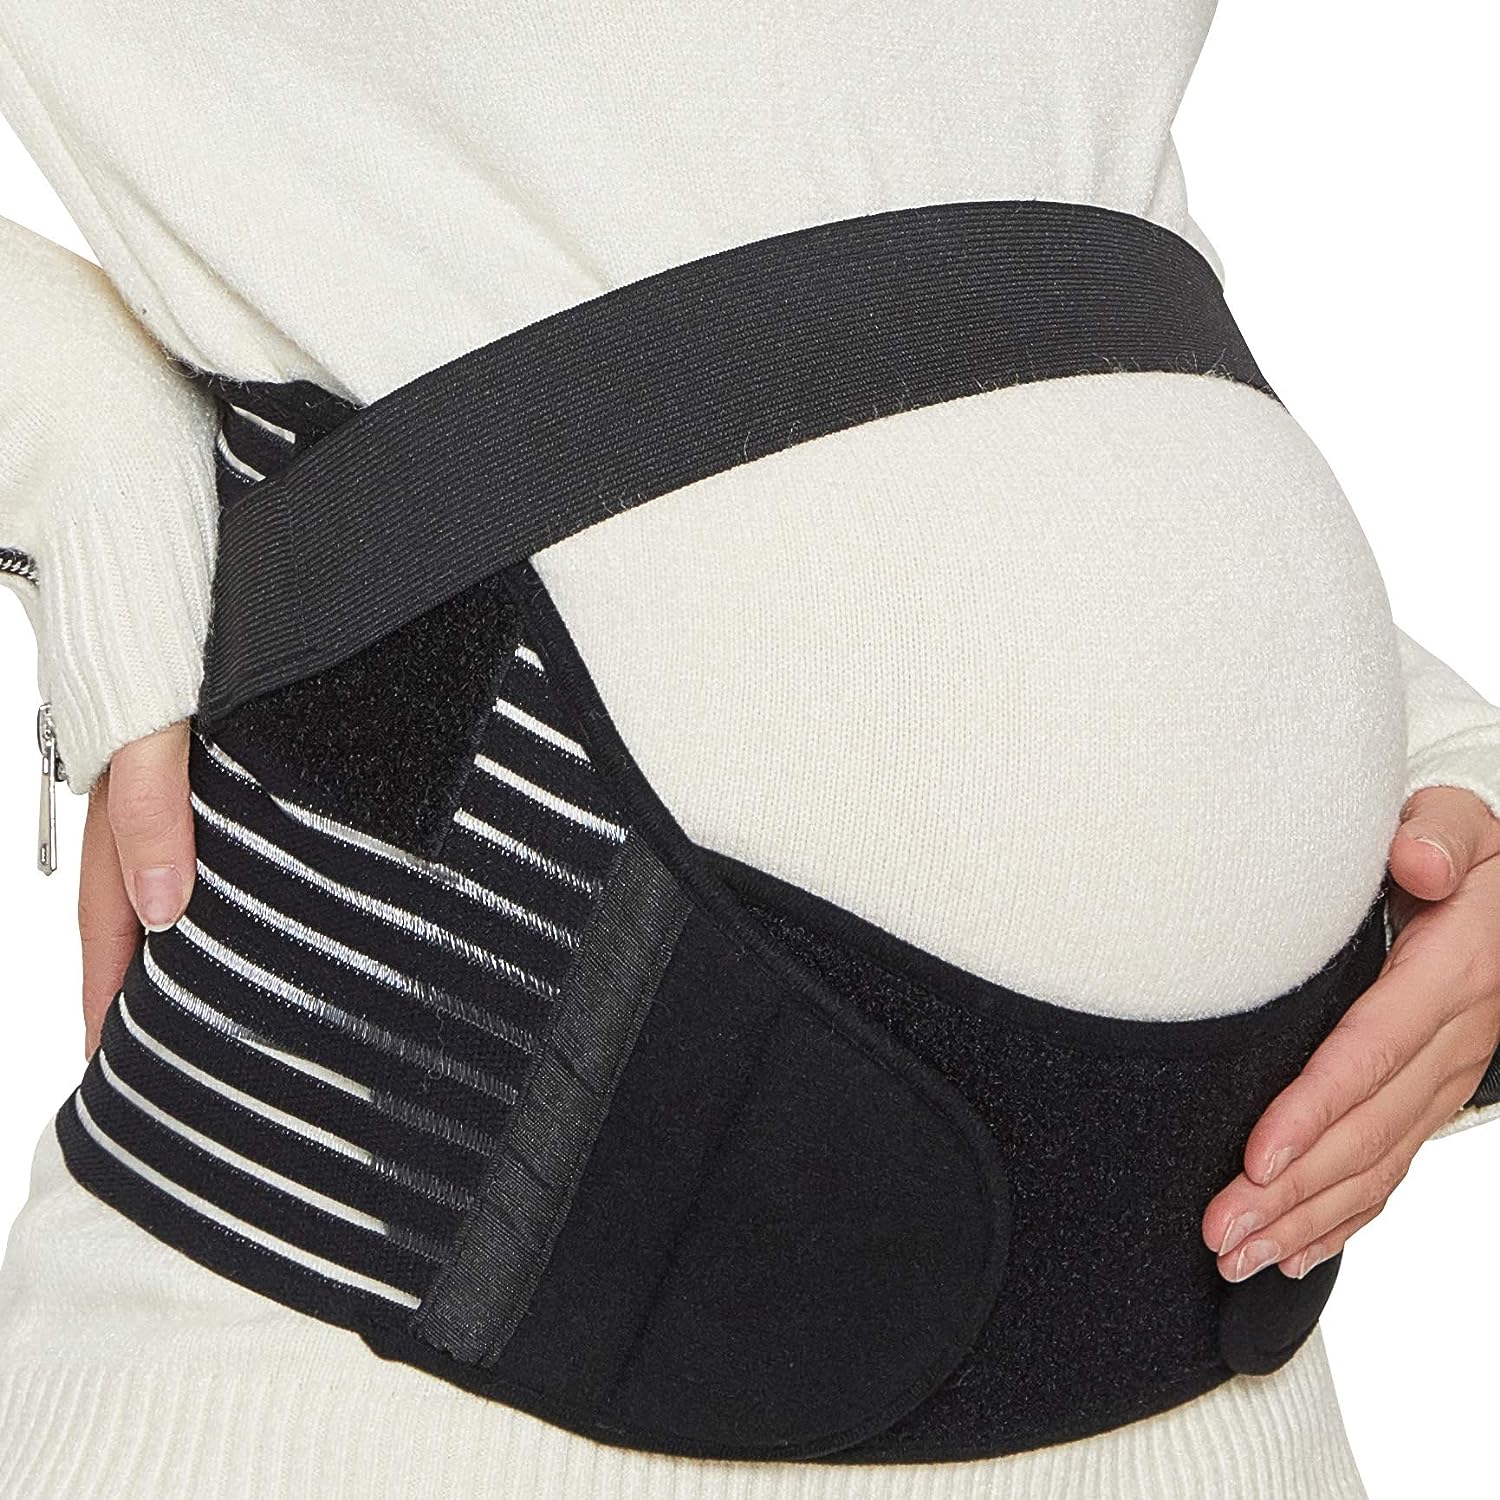 Fabrikkproduserer direkte graviditetsbelte Gravidbøyle for midje abdomial korsrygg Graviditetsbelte